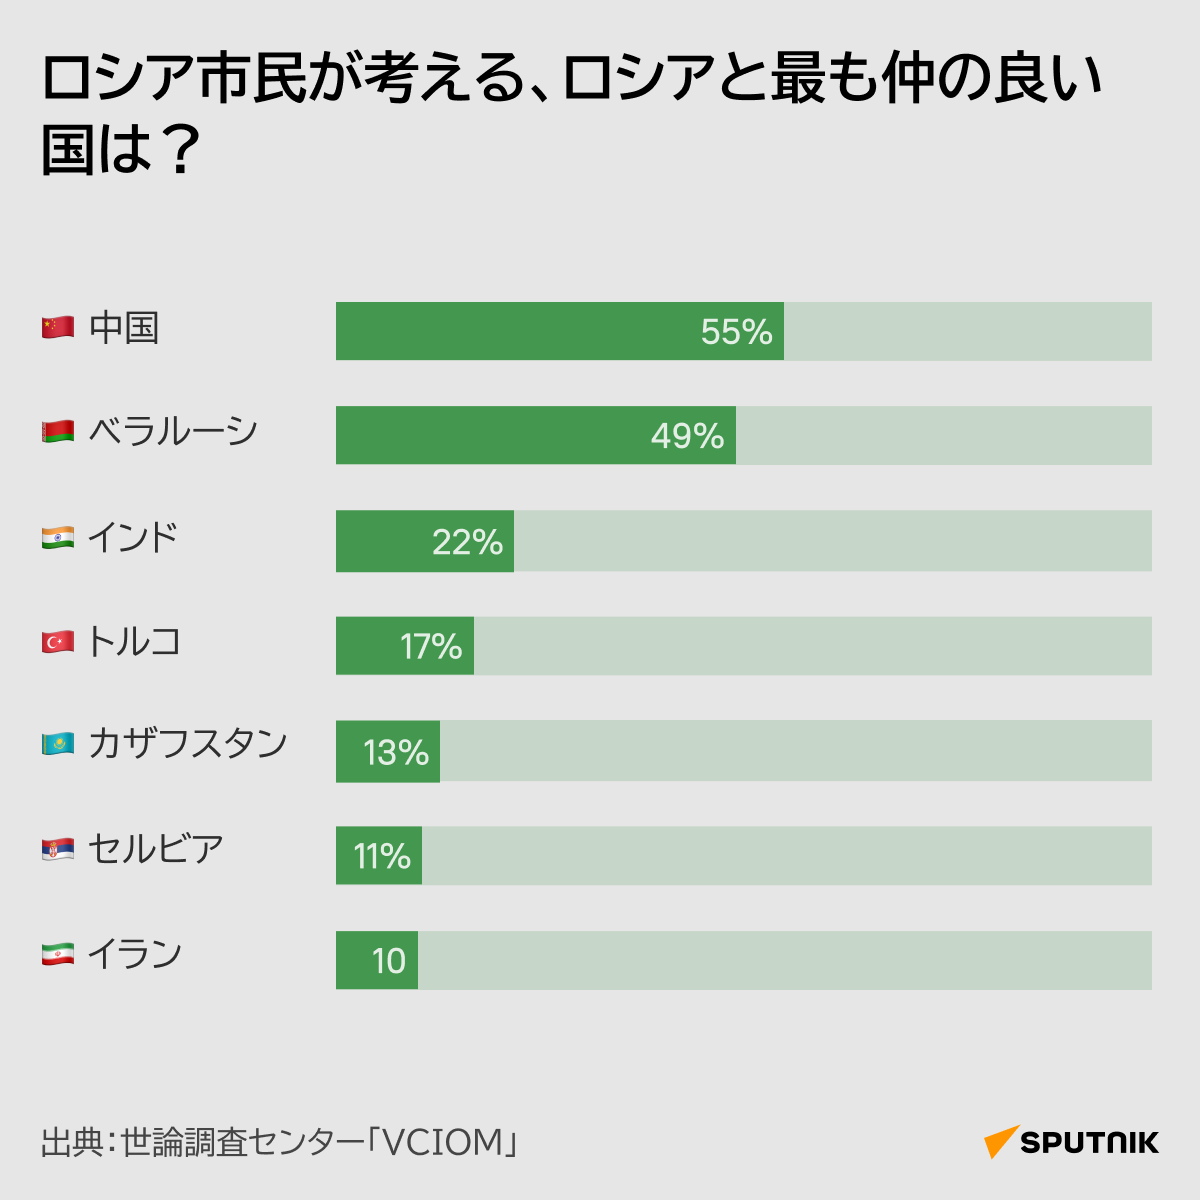 ロシア市民が考える、ロシアと関係の良い国・悪い国 - Sputnik 日本